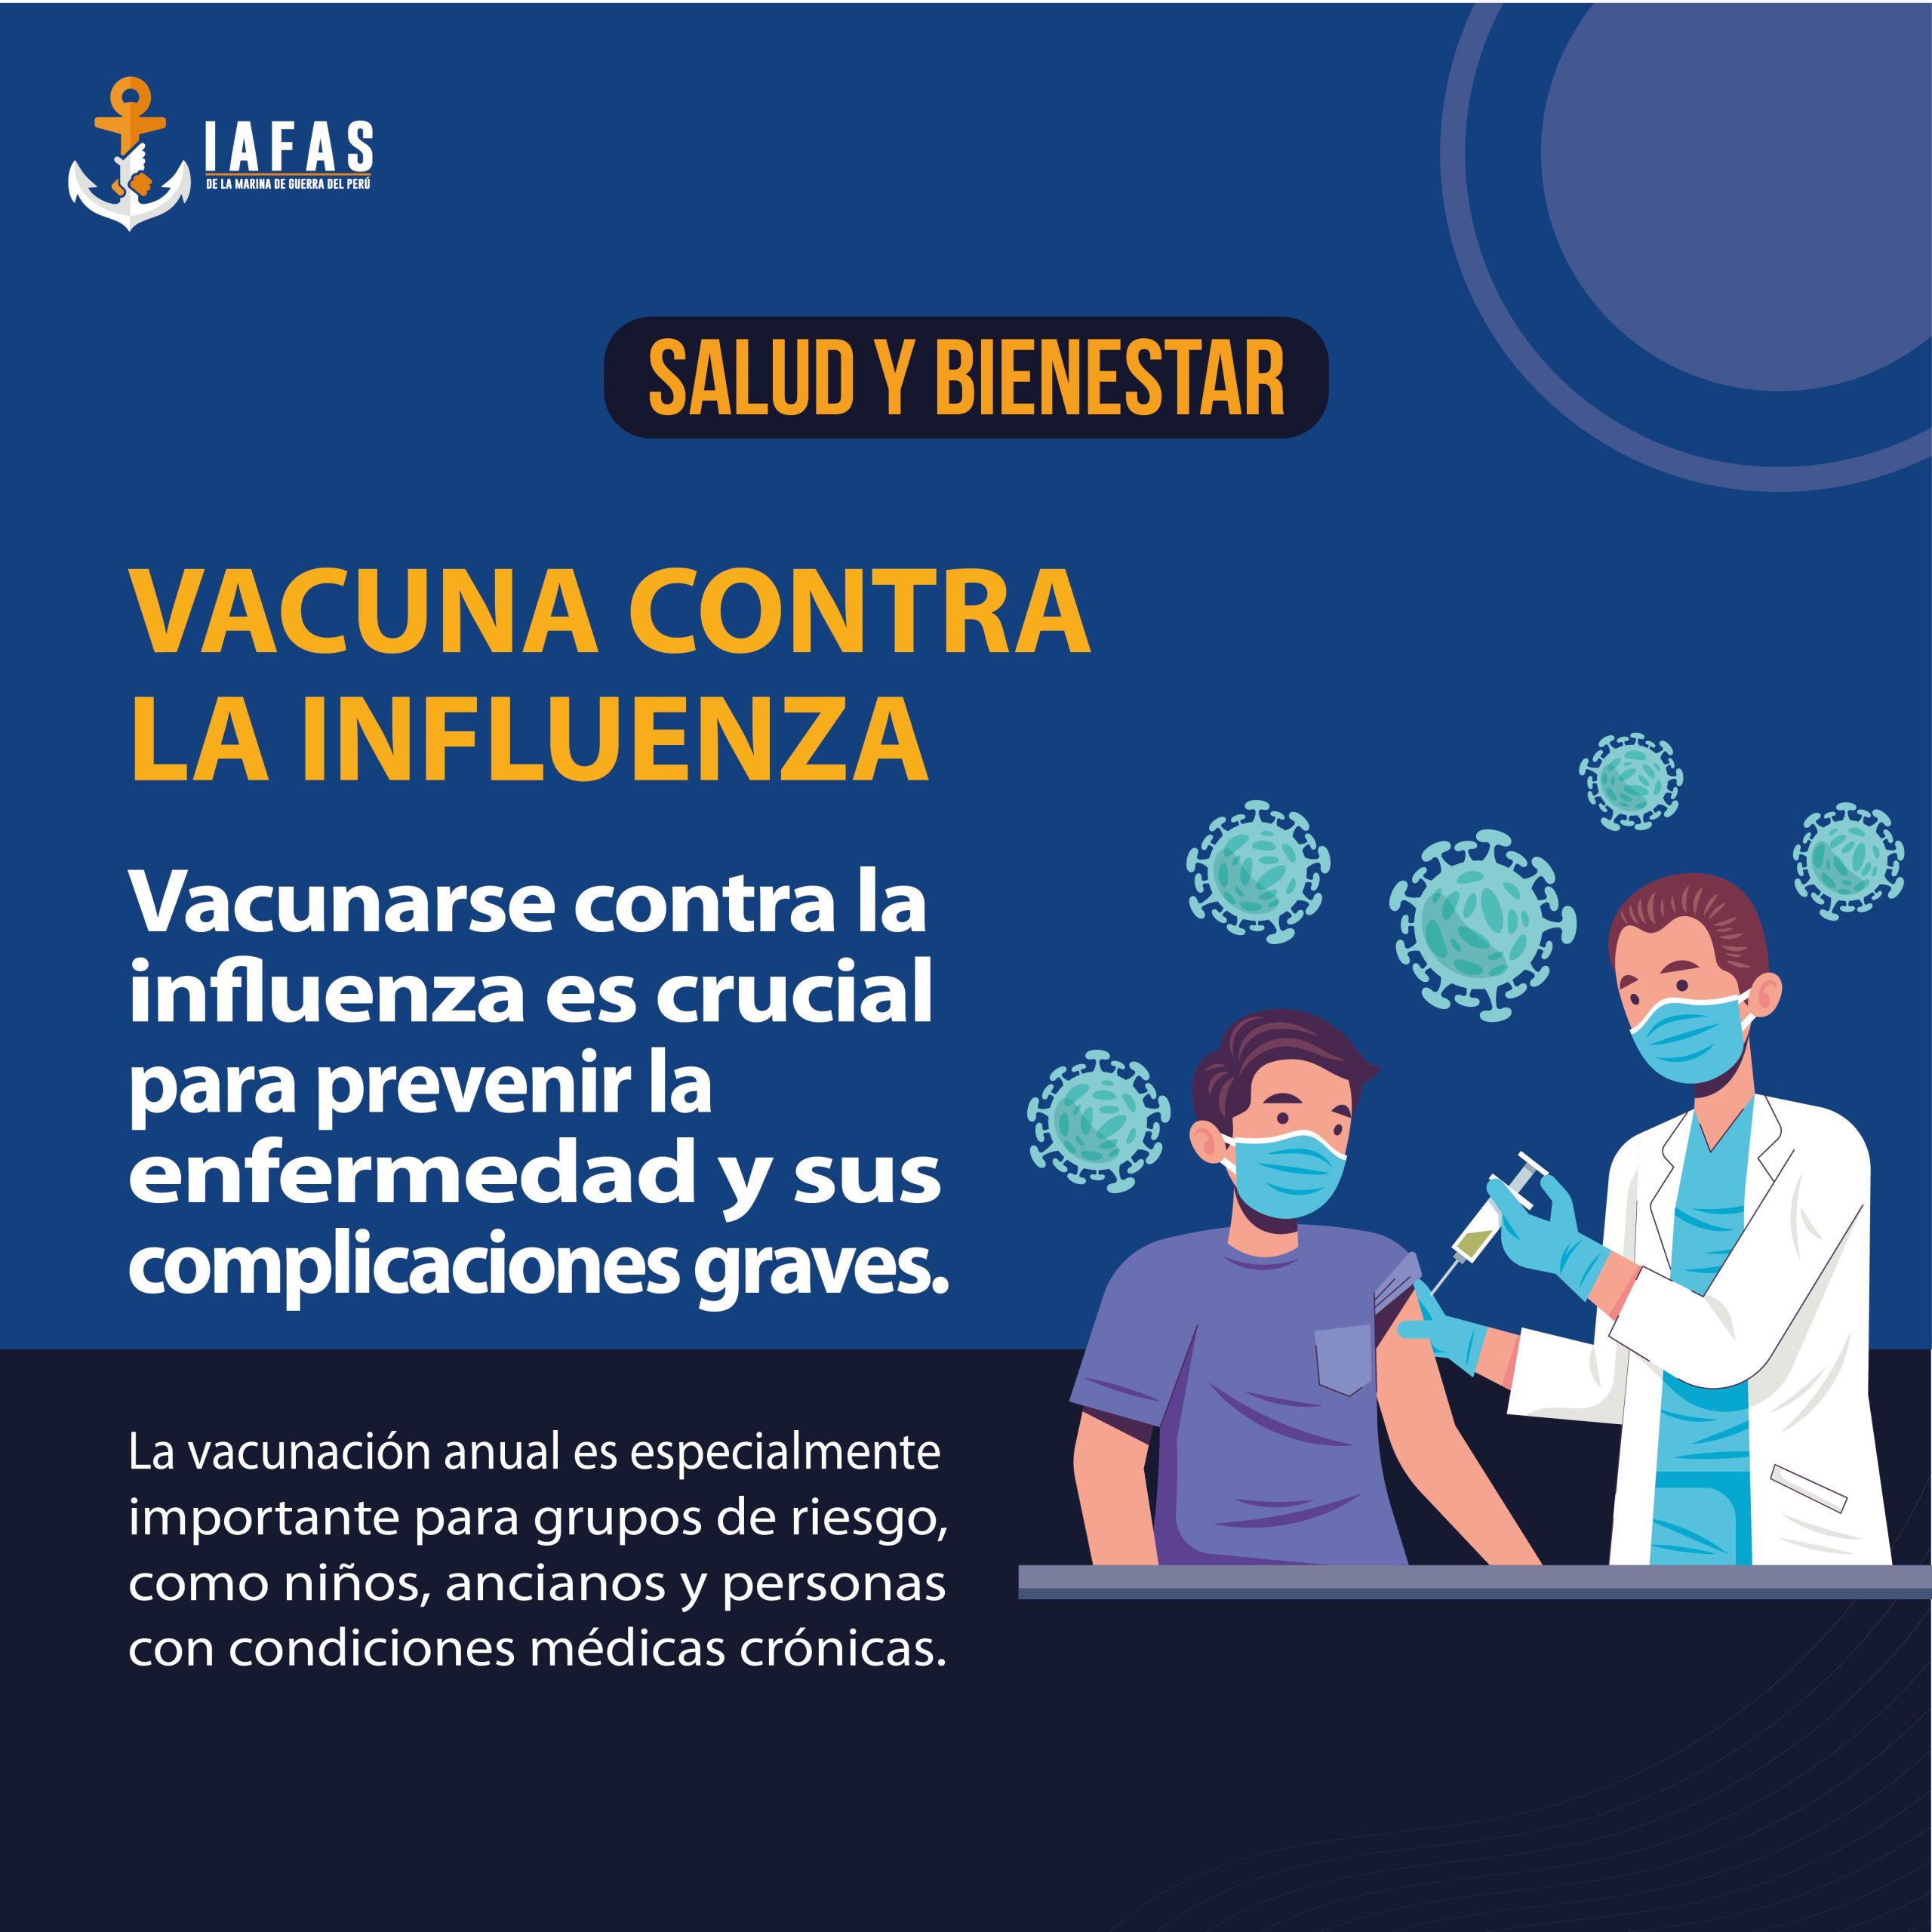 Vacuna Contra la Influenza